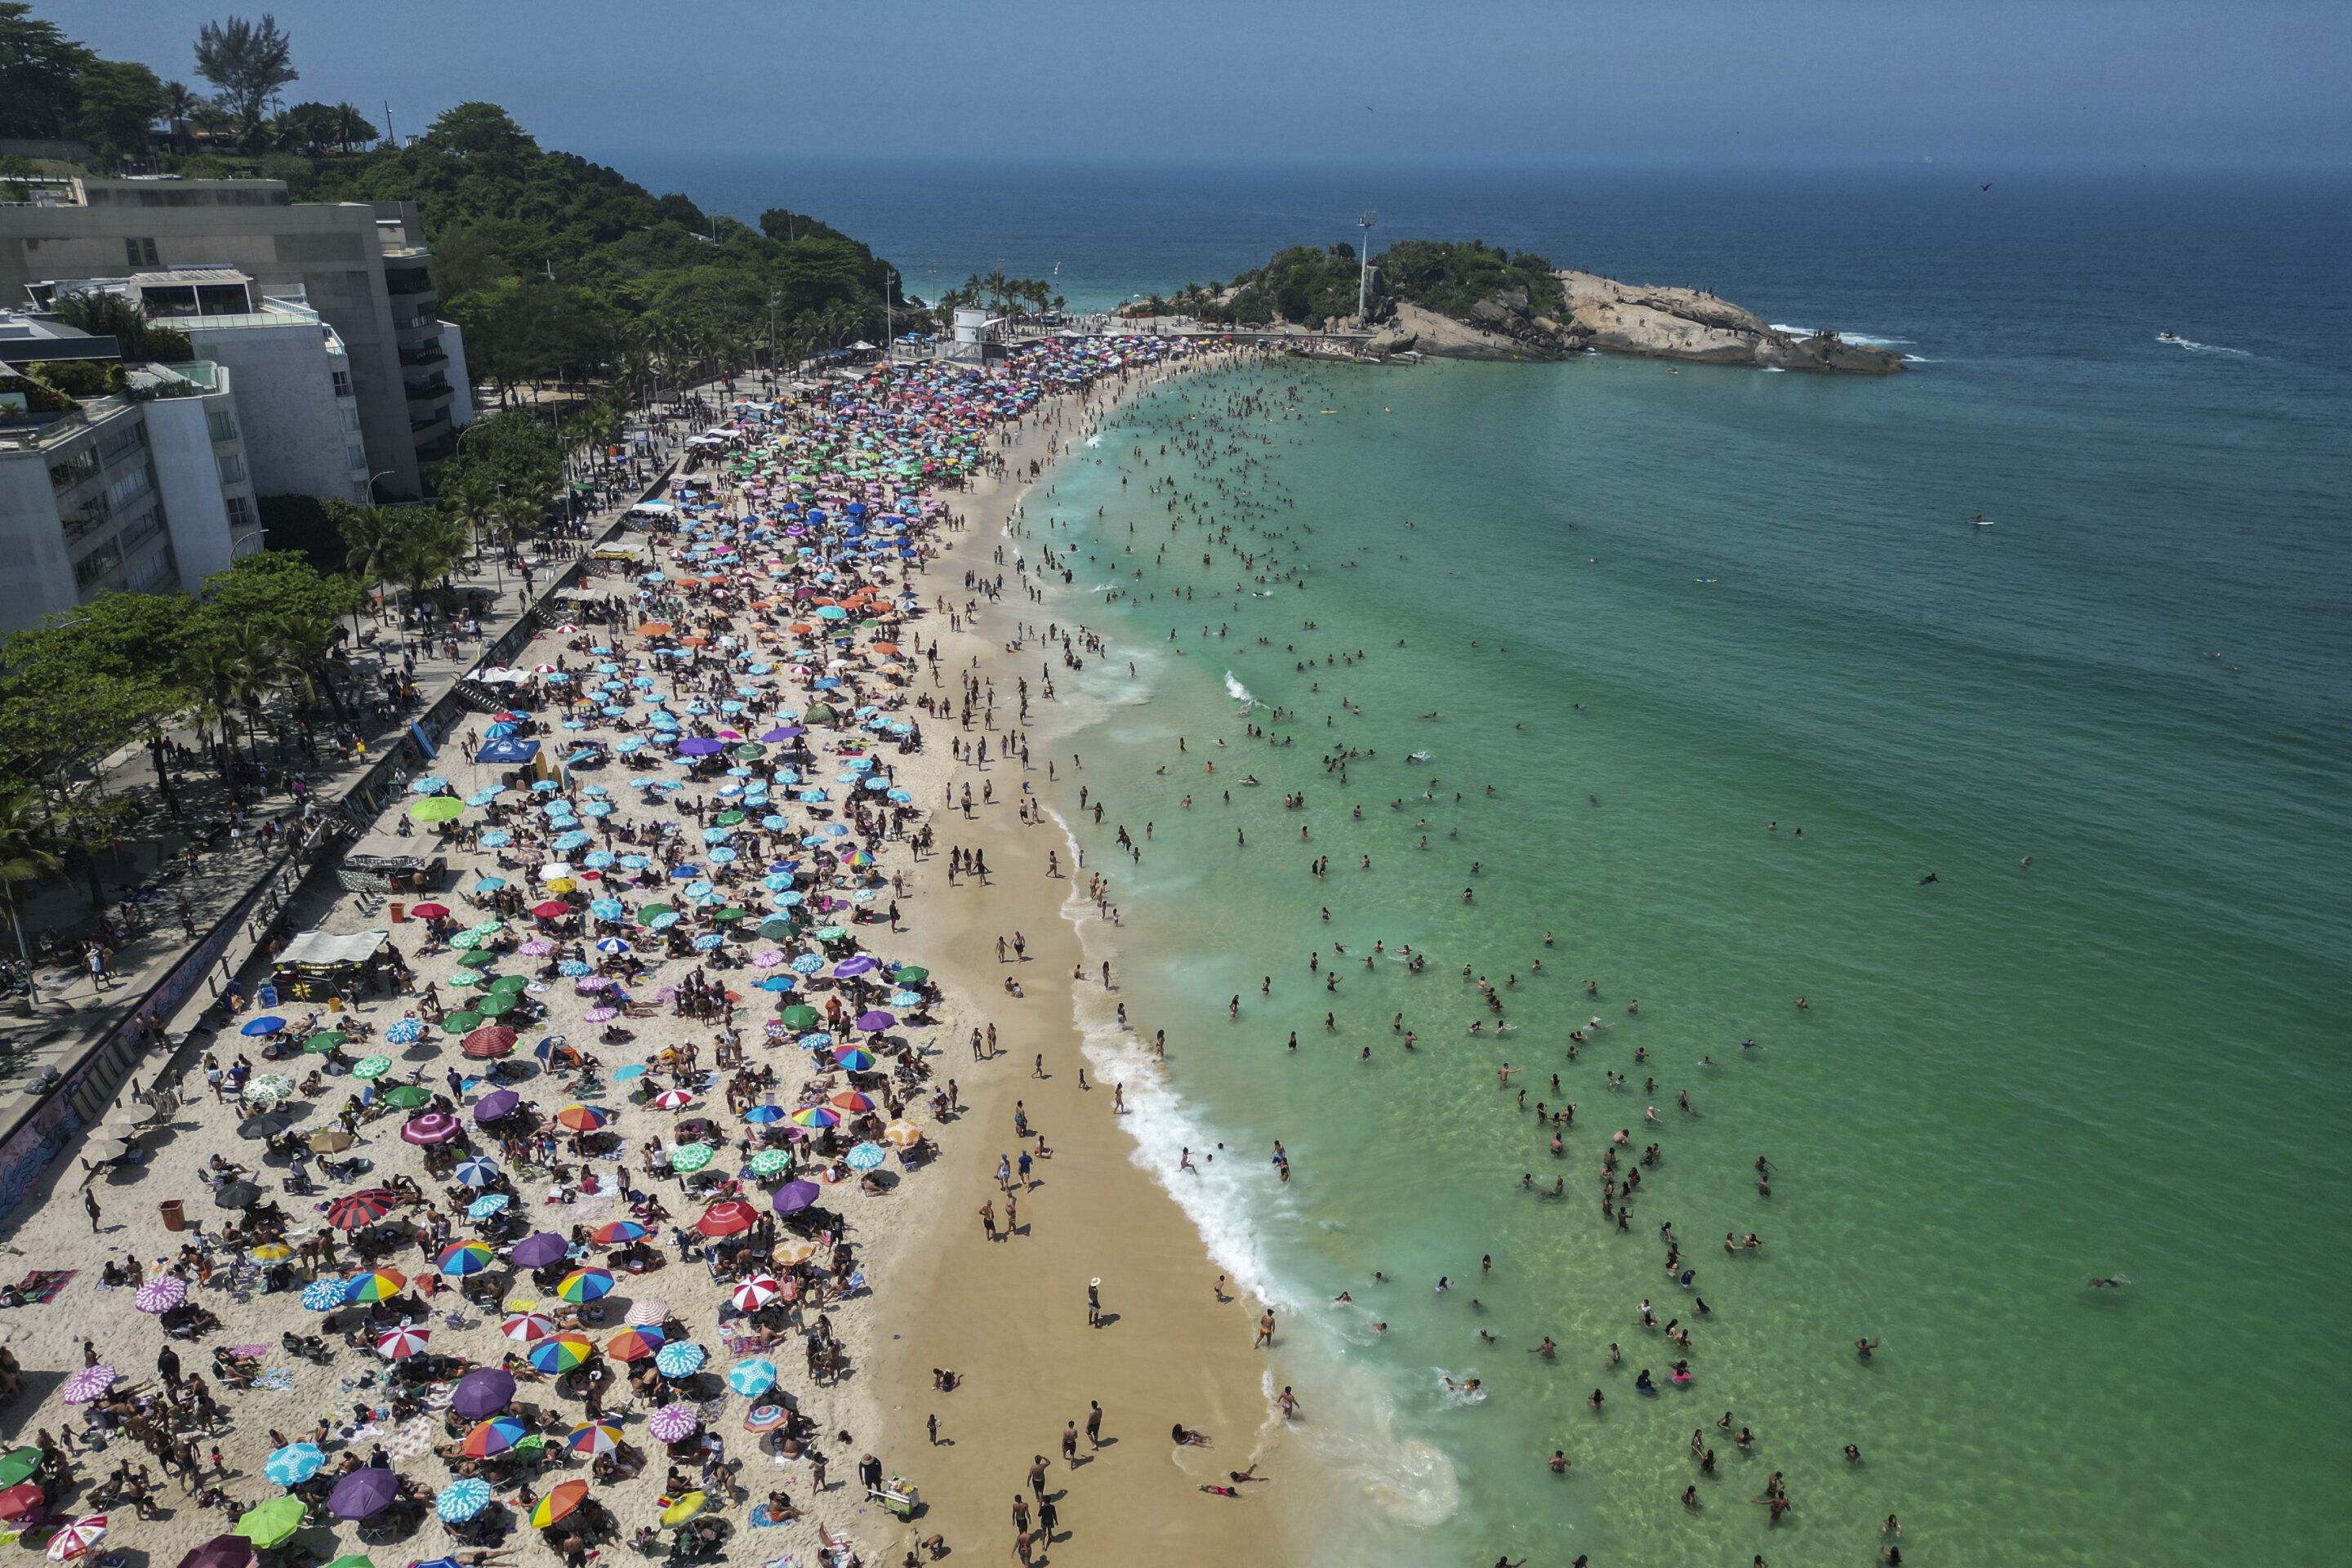 Любители пляжного отдыха стекаются на пляж Арпоадор, чтобы переждать сильную жару в Рио-де-Жанейро, Бразилия, воскресенье, 24 сентября 2023 года. По подсчётам Европейского климатического агентства, ноябрь уже шестой месяц подряд устанавливает новый месячный рекорд жары, добавляя самую жаркую осень к побитым рекордам жары в этом году